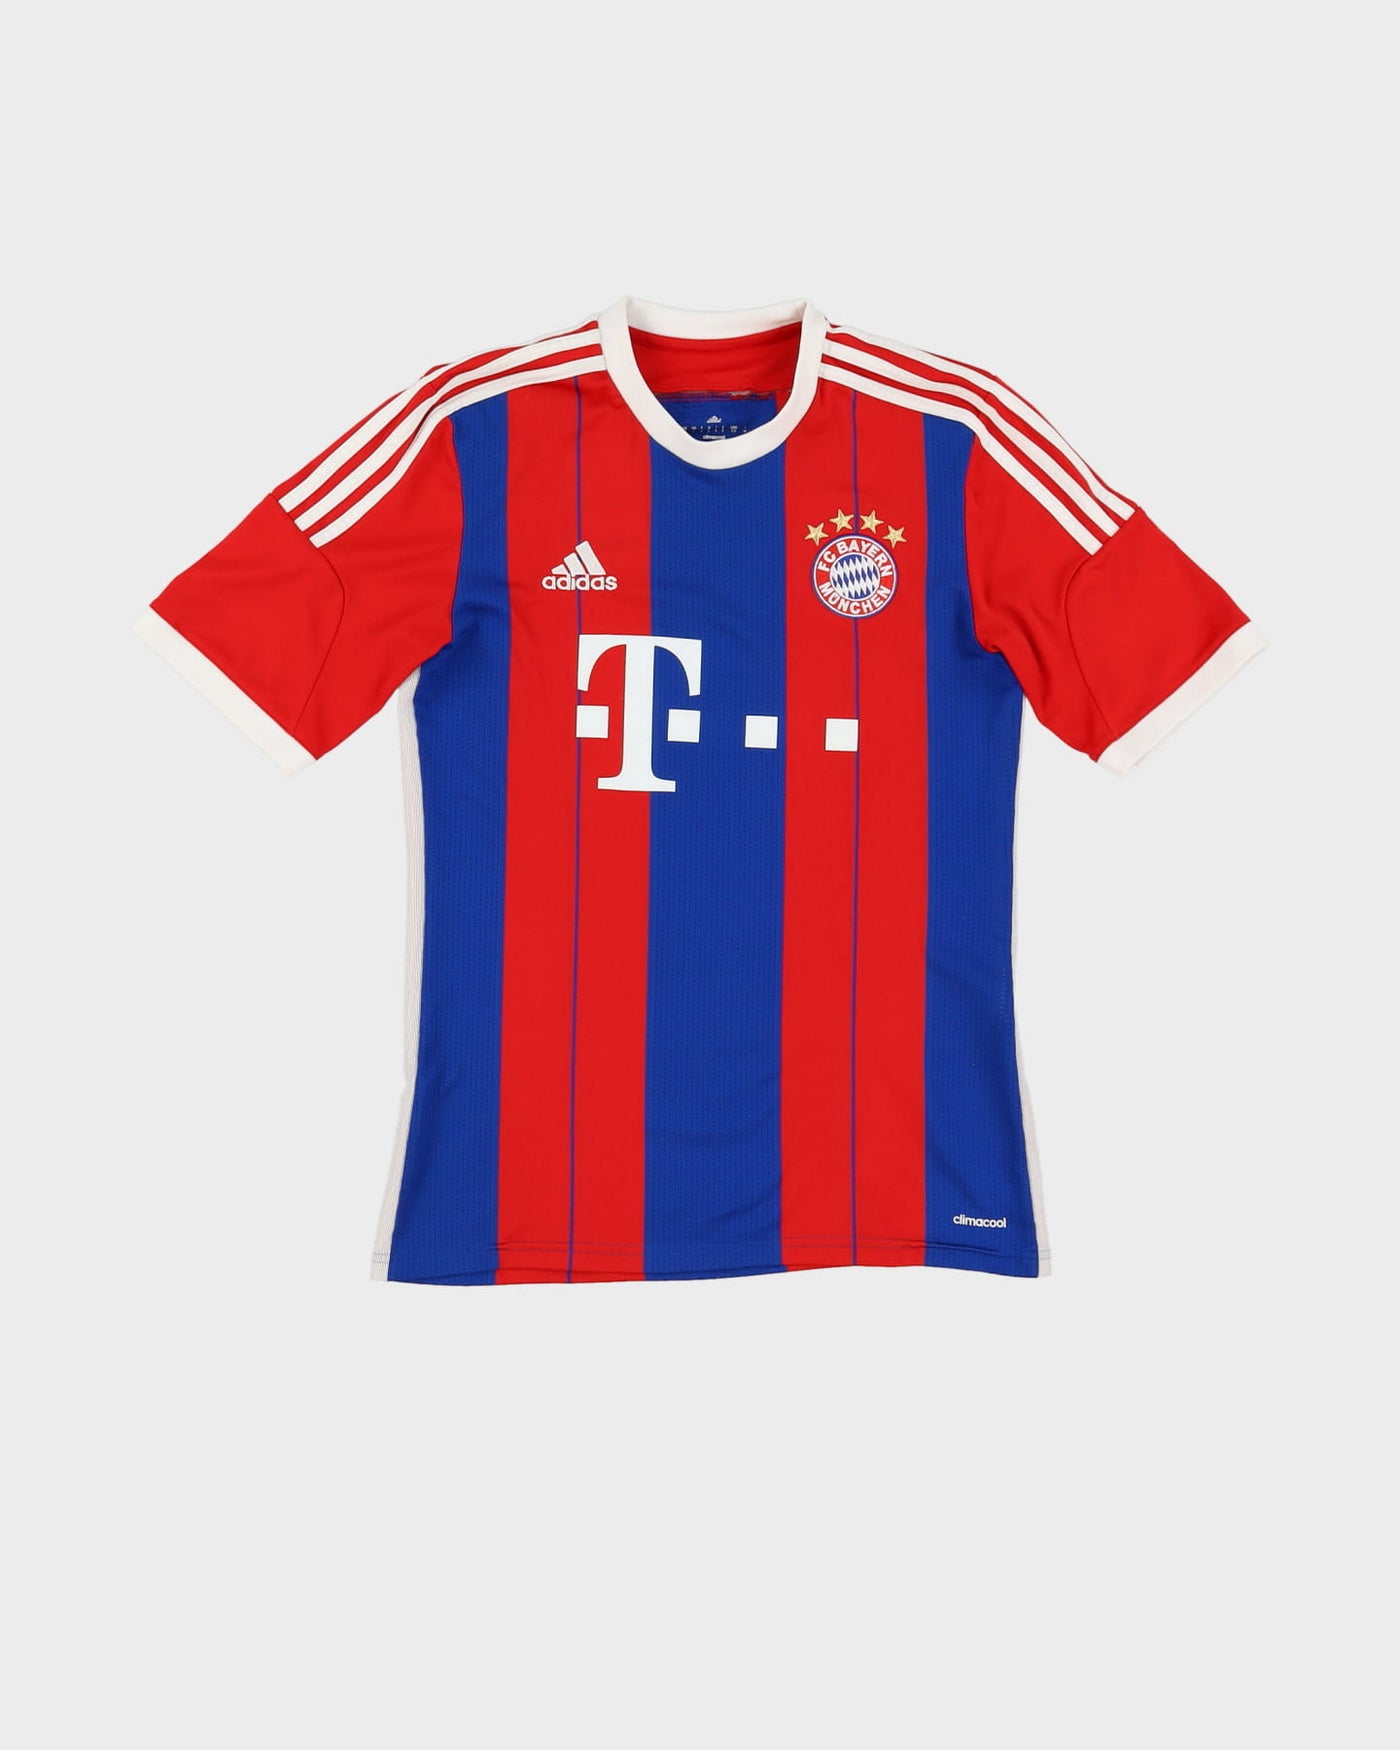 Adidas Bayern Munich Home 2014-15 Football Shirt / Jersey - S